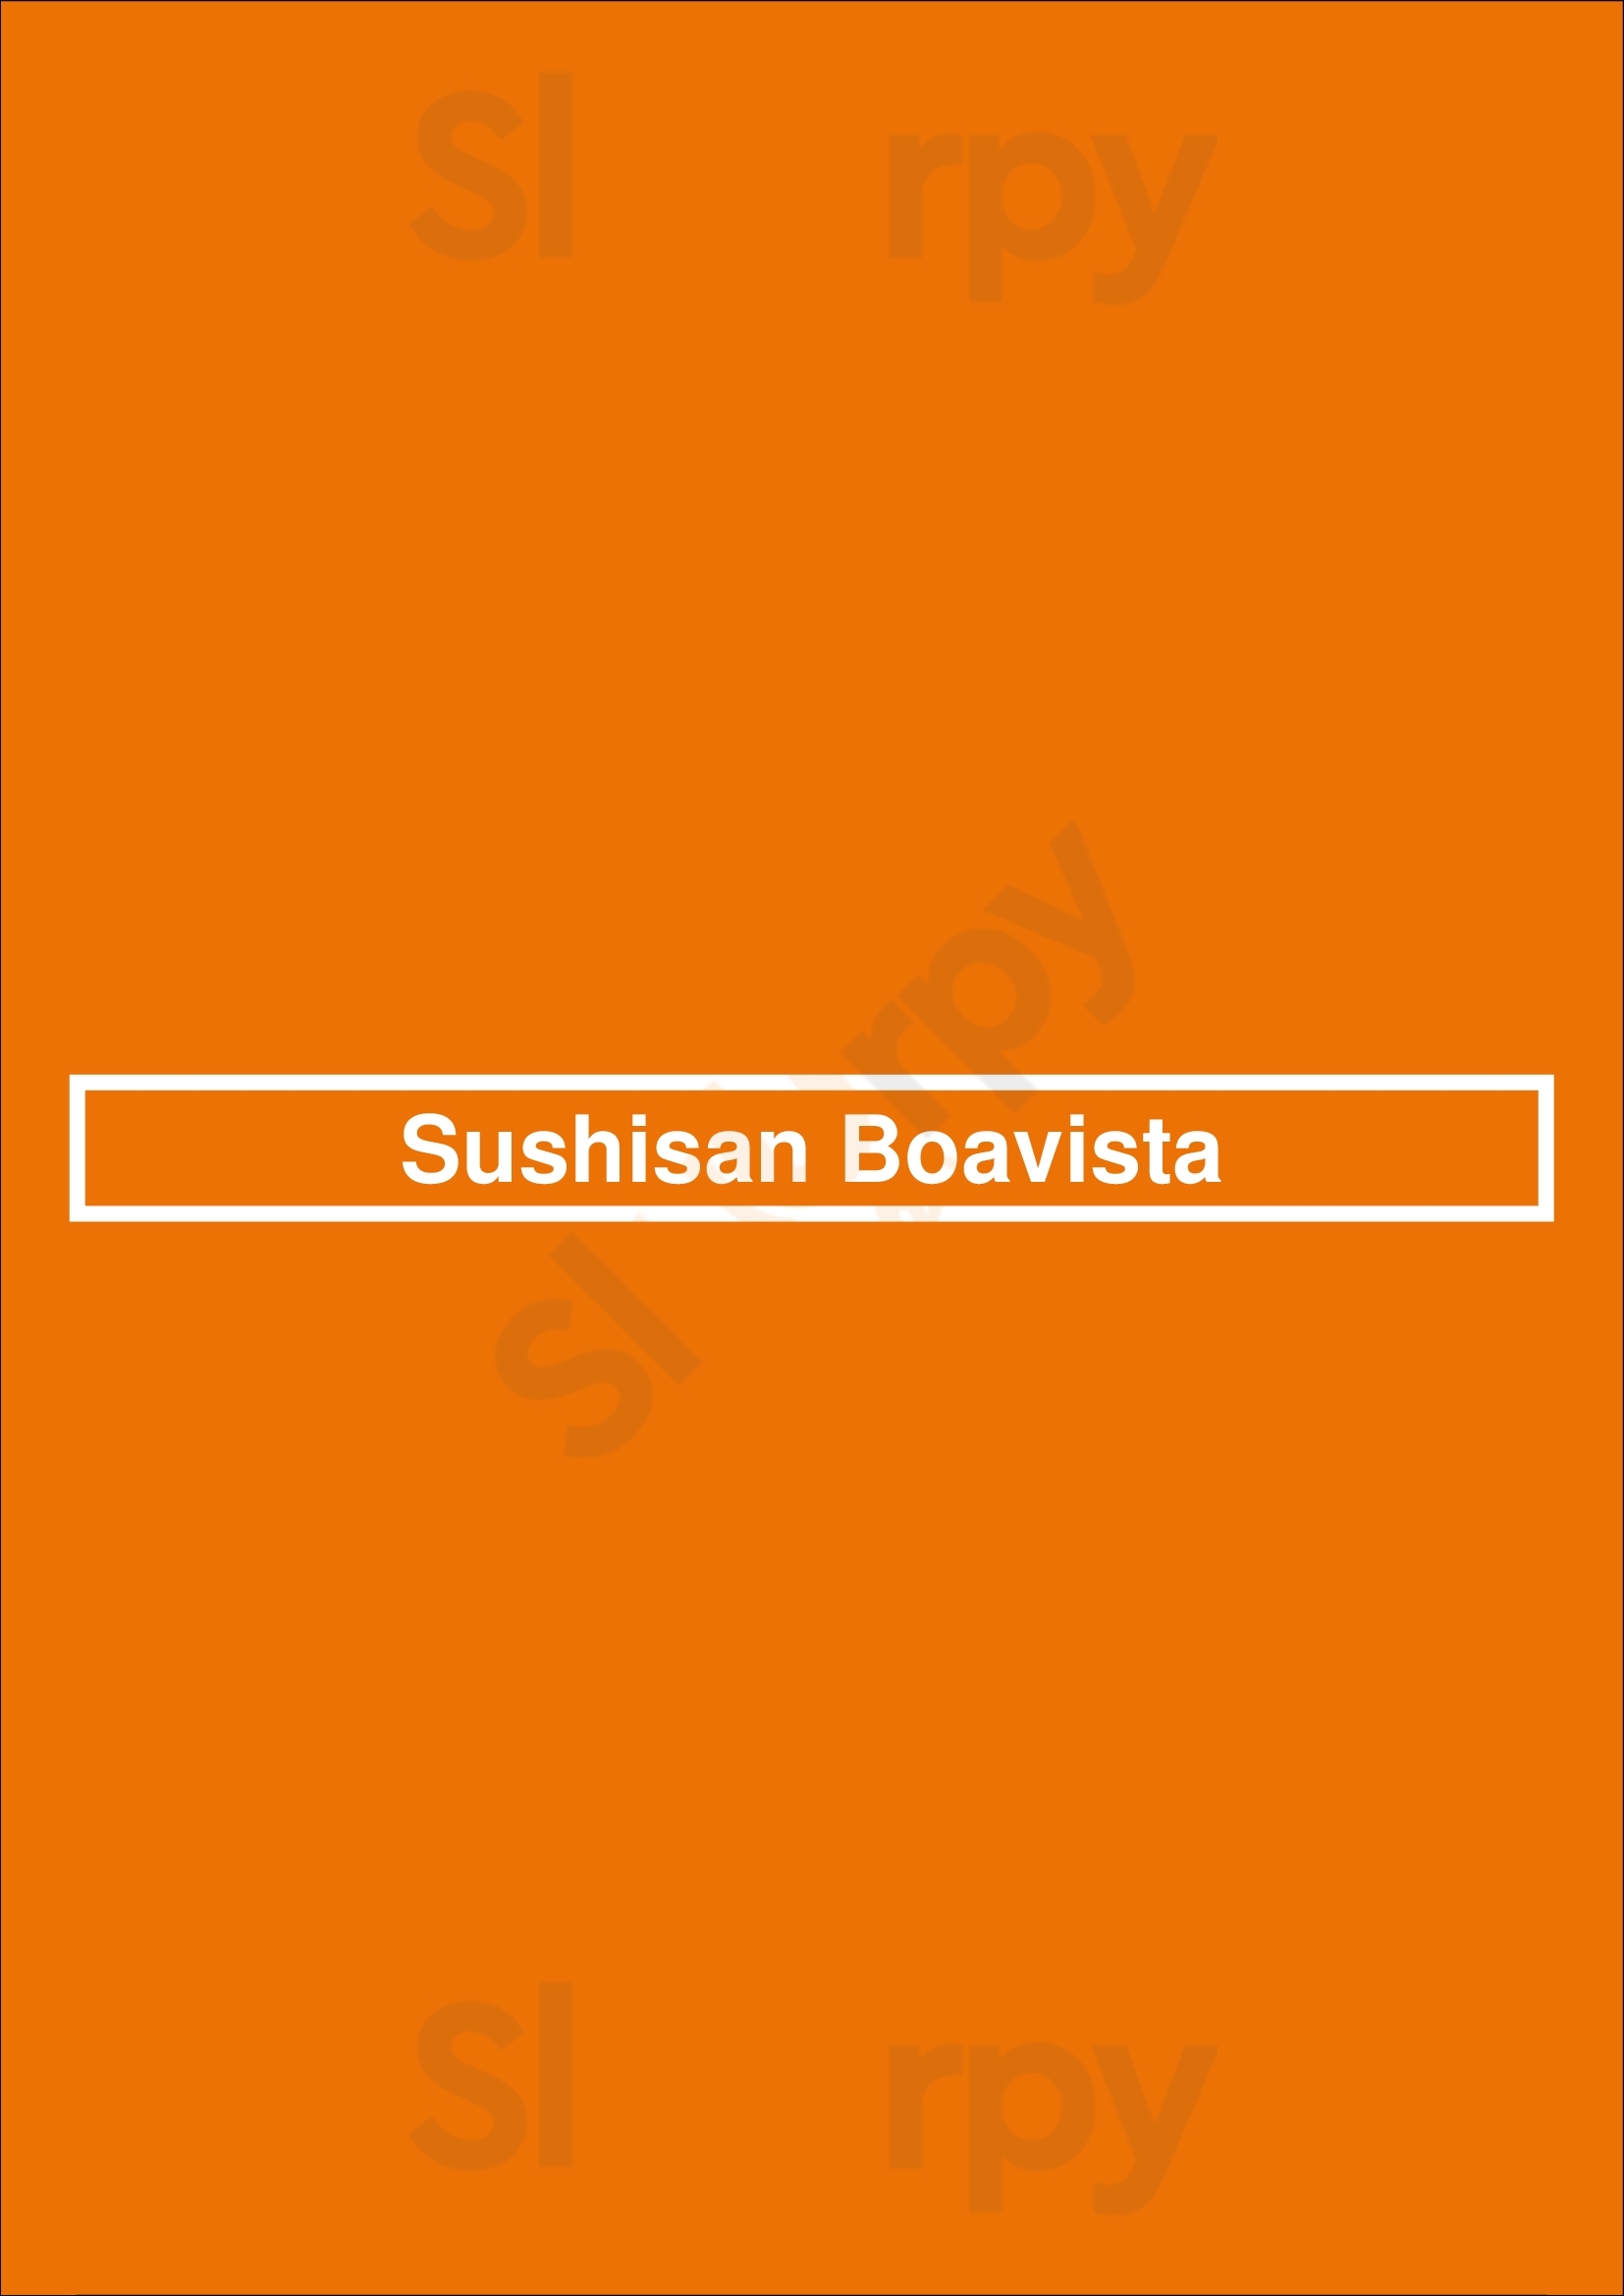 Sushisan Boavista Porto Menu - 1